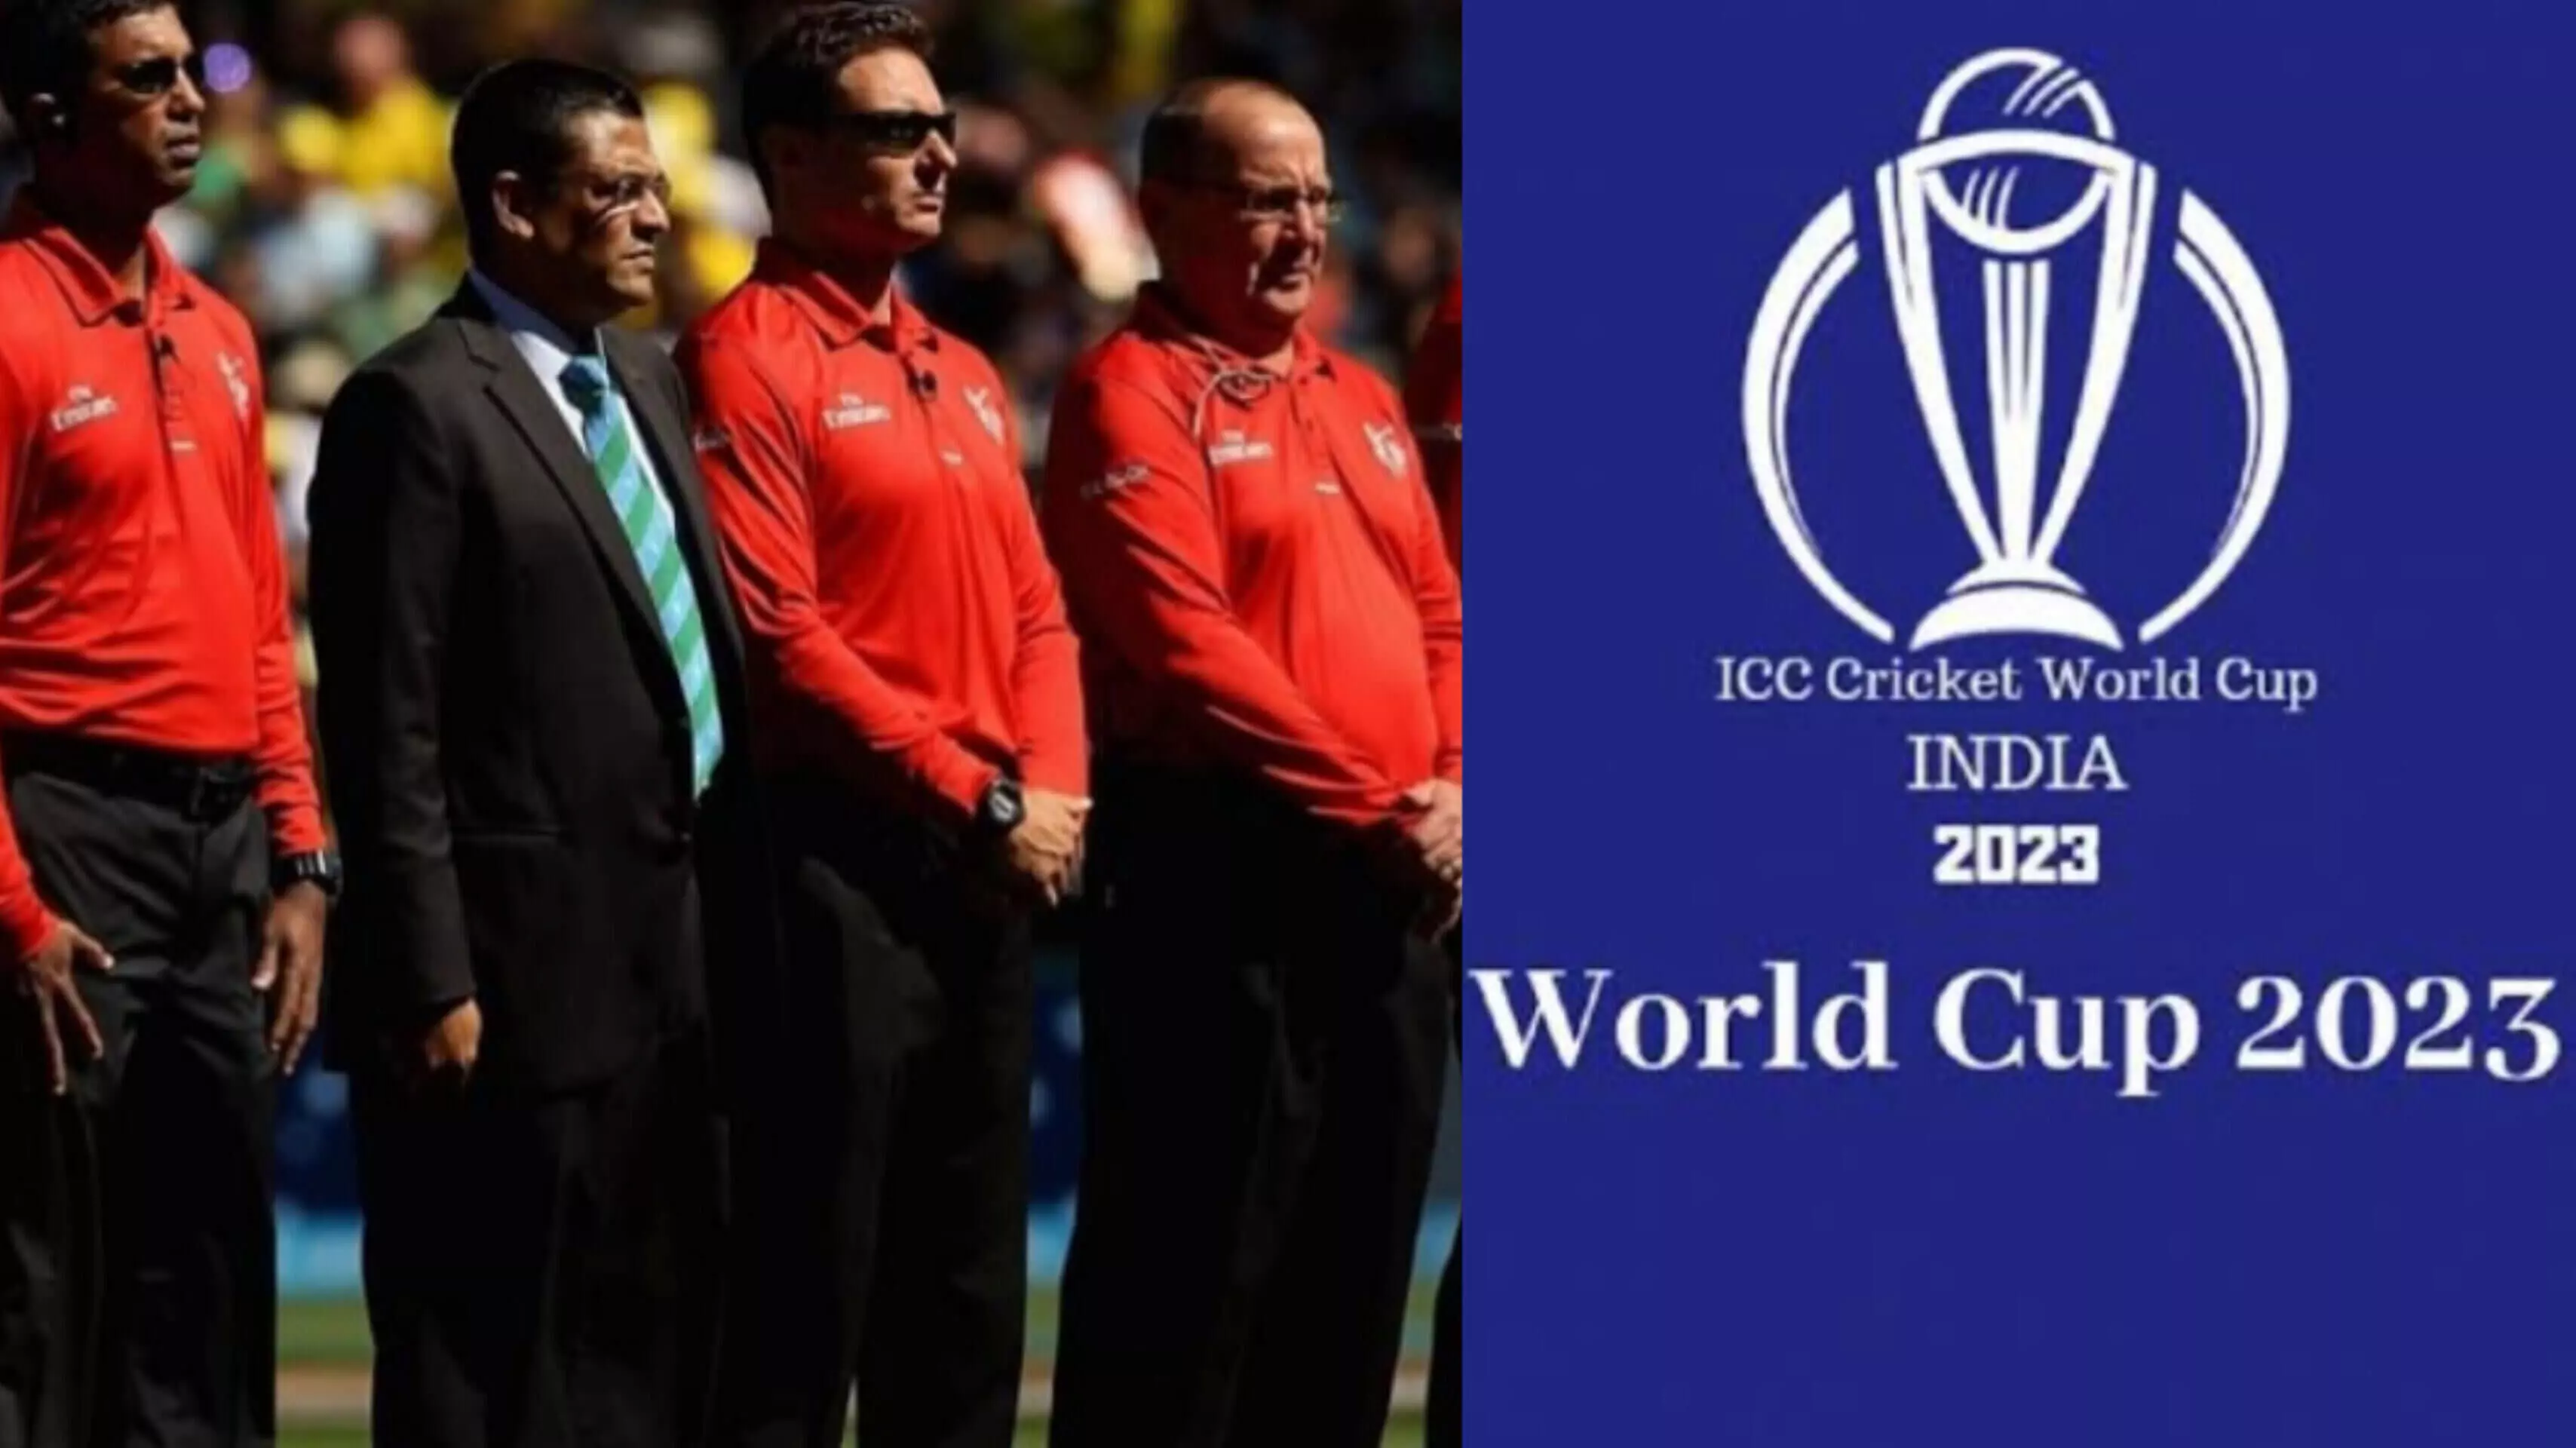 ICC ODI World Cup 2023: ICC ने वर्ल्ड कप 2023 के लिए मैच अधिकारियों का किया ऐलान, यहां देखें अंपायर और रेफरी लिस्ट